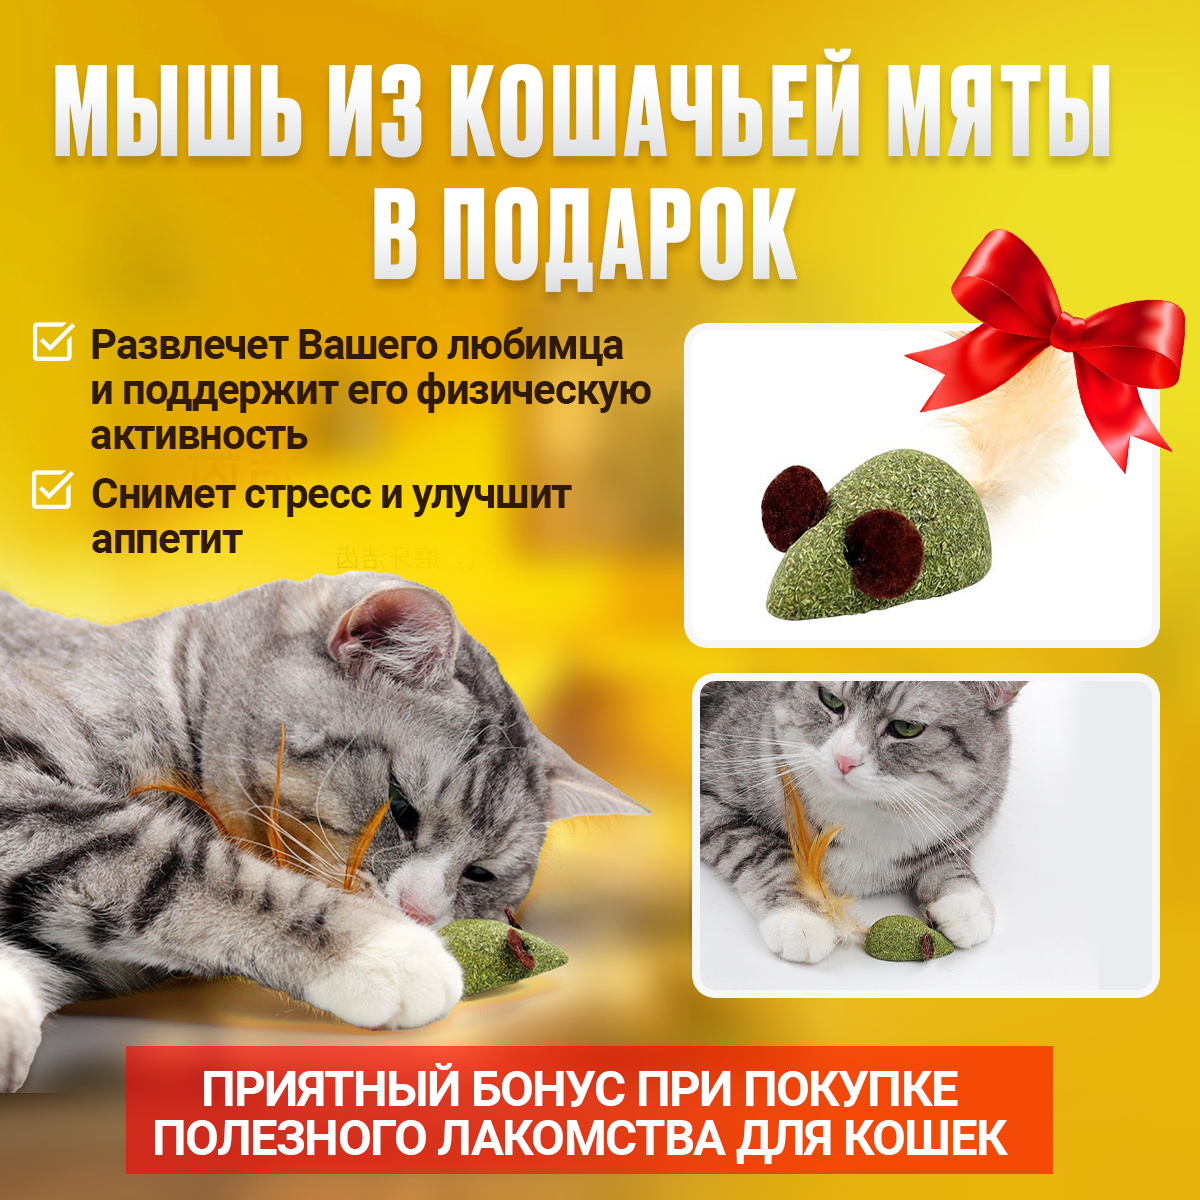 Леденец с кошачьей мятой, шарик лакомство для кошек 3 шт + конфета + мышка из кошачьей мяты . Цвет розовый - фотография № 7